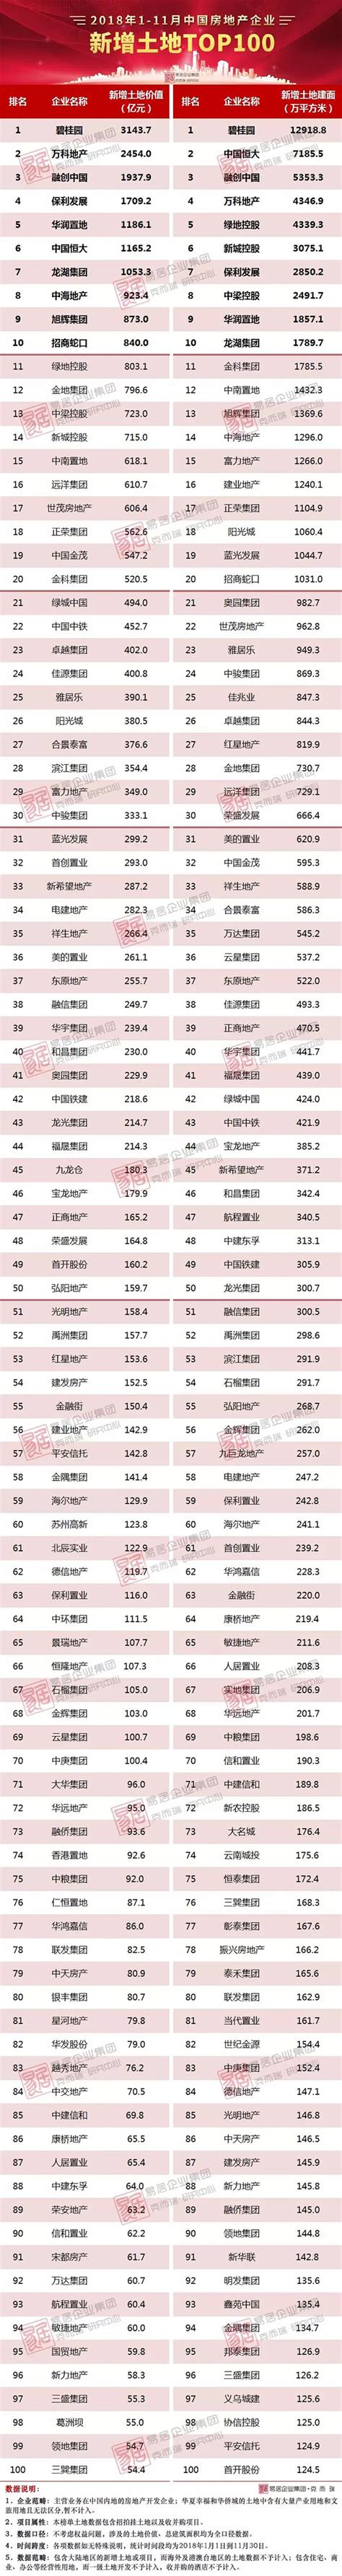 [克而瑞]2018年1-11月中国房地产企业新增货值TOP100_中房网_中国房地产业协会官方网站